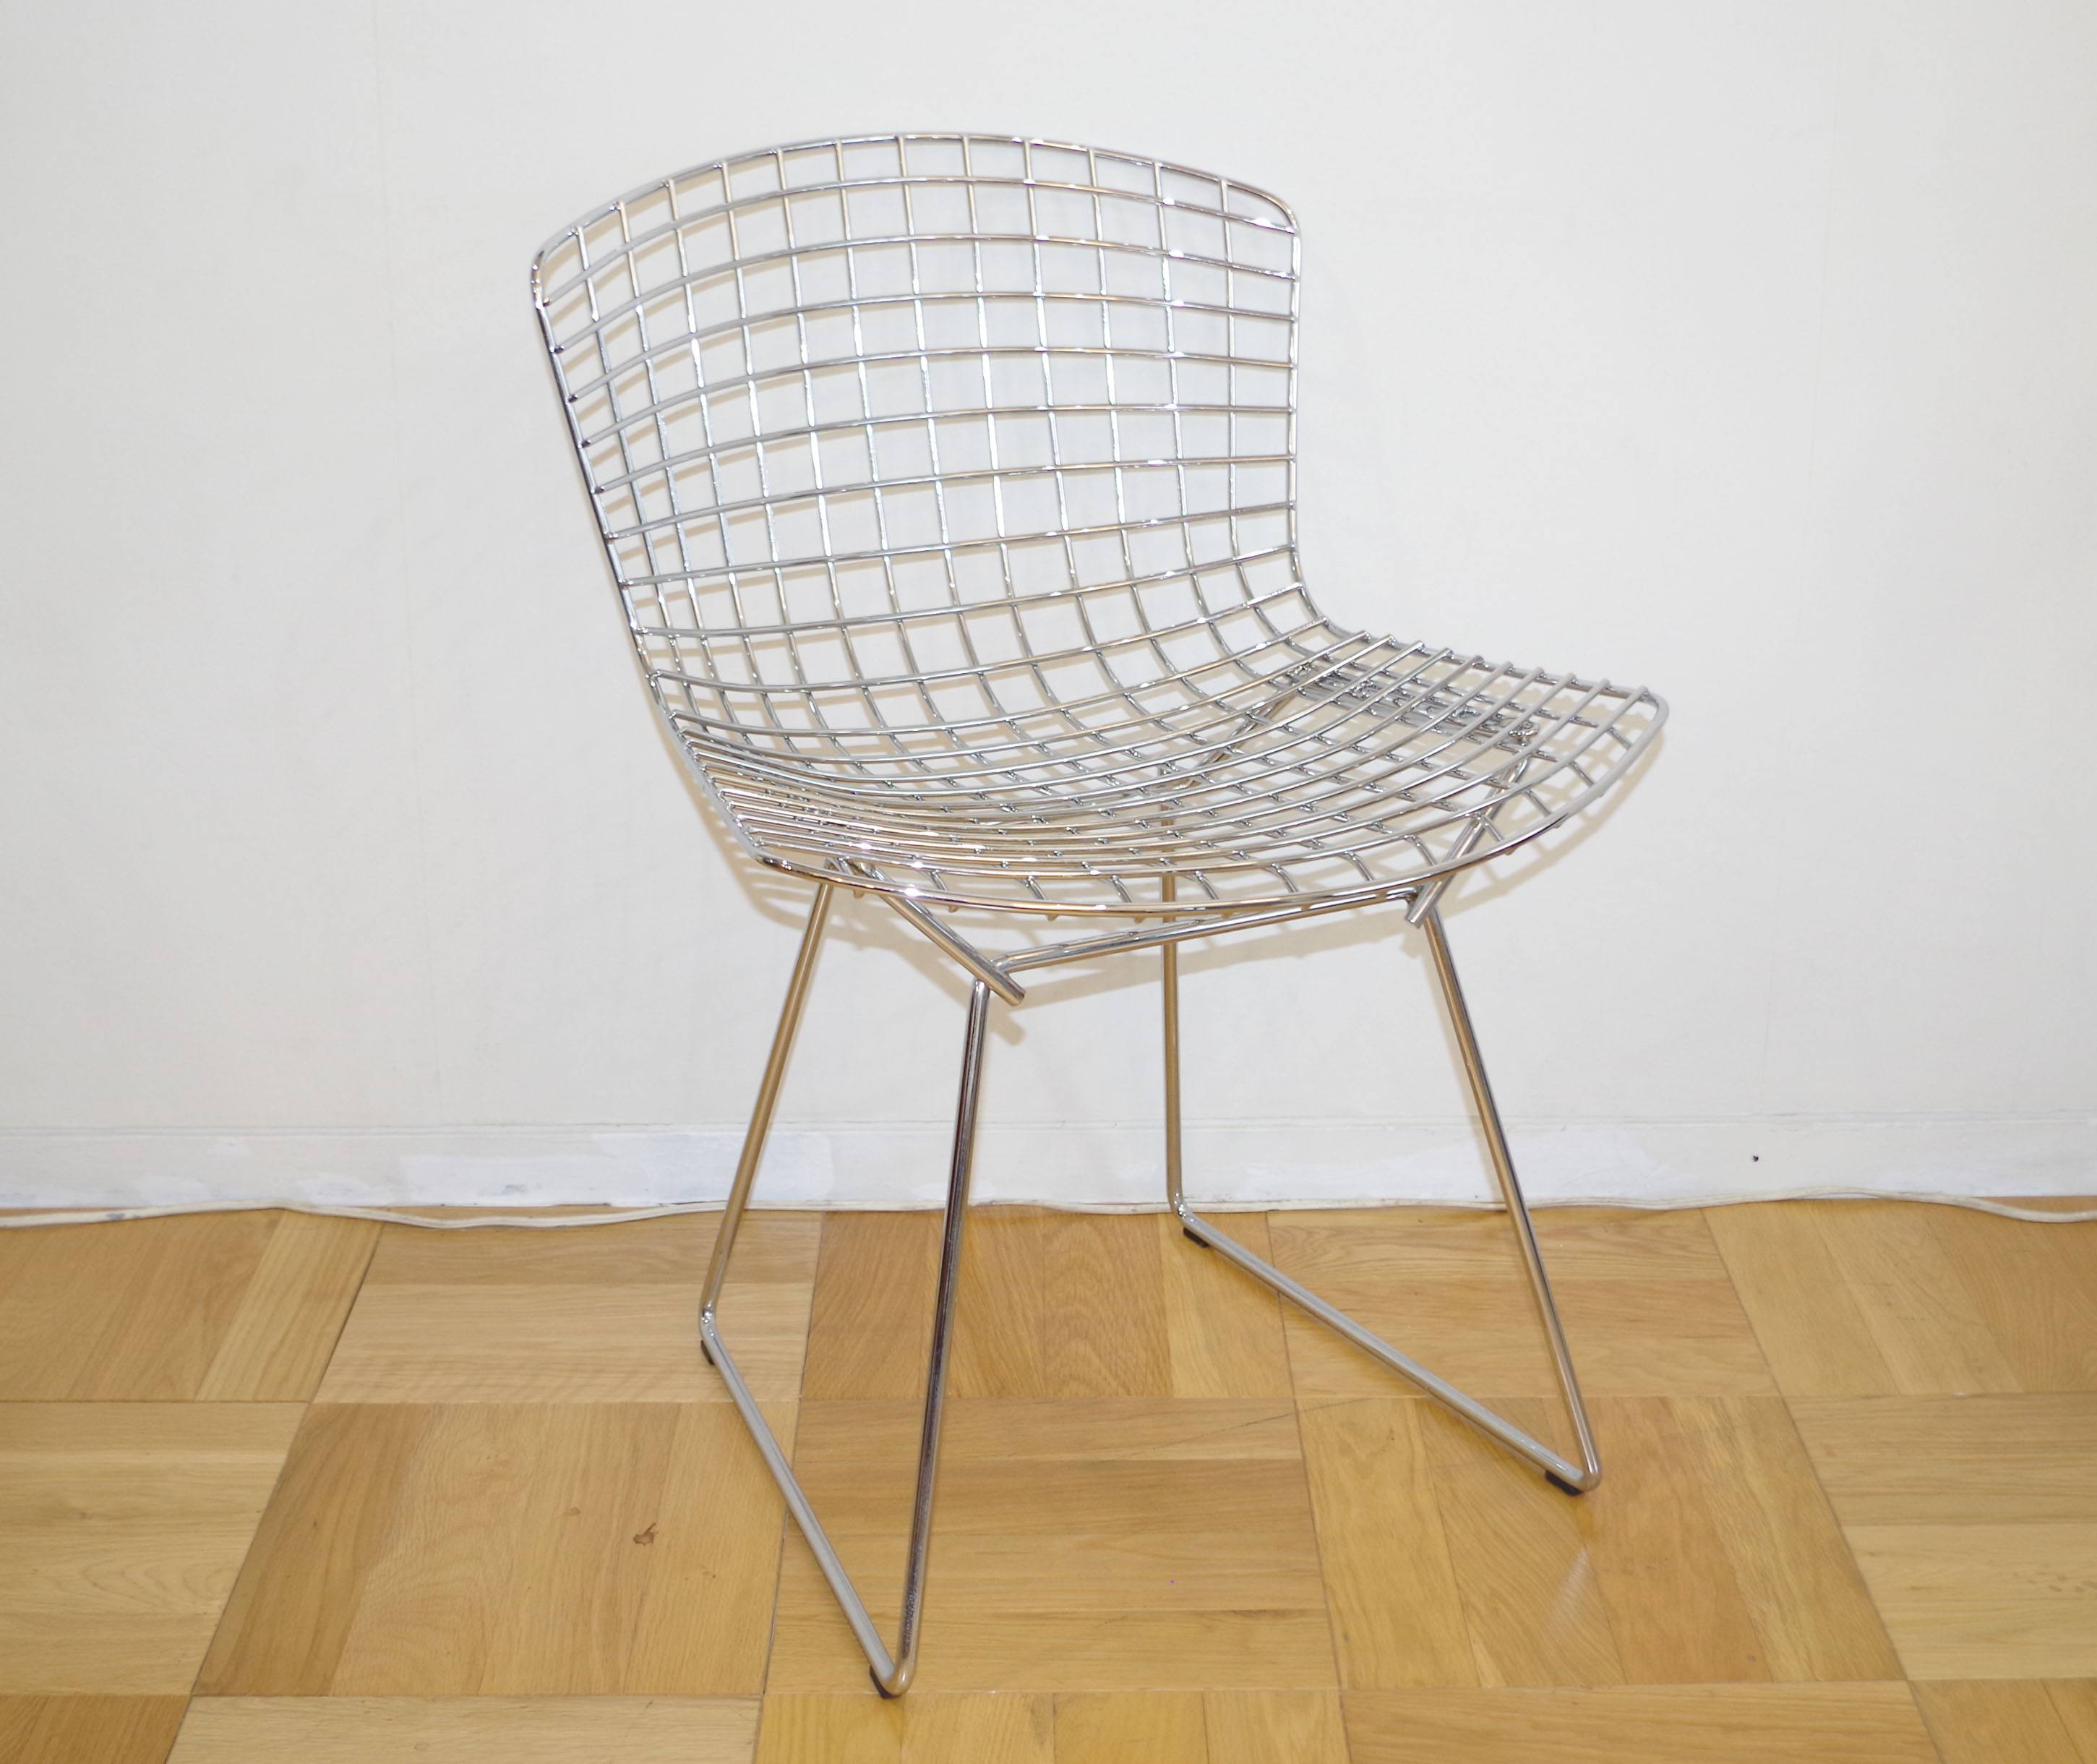 金属彫刻家ハリー・ベルトイアのワイヤー組の名作椅子「サイドチェア 